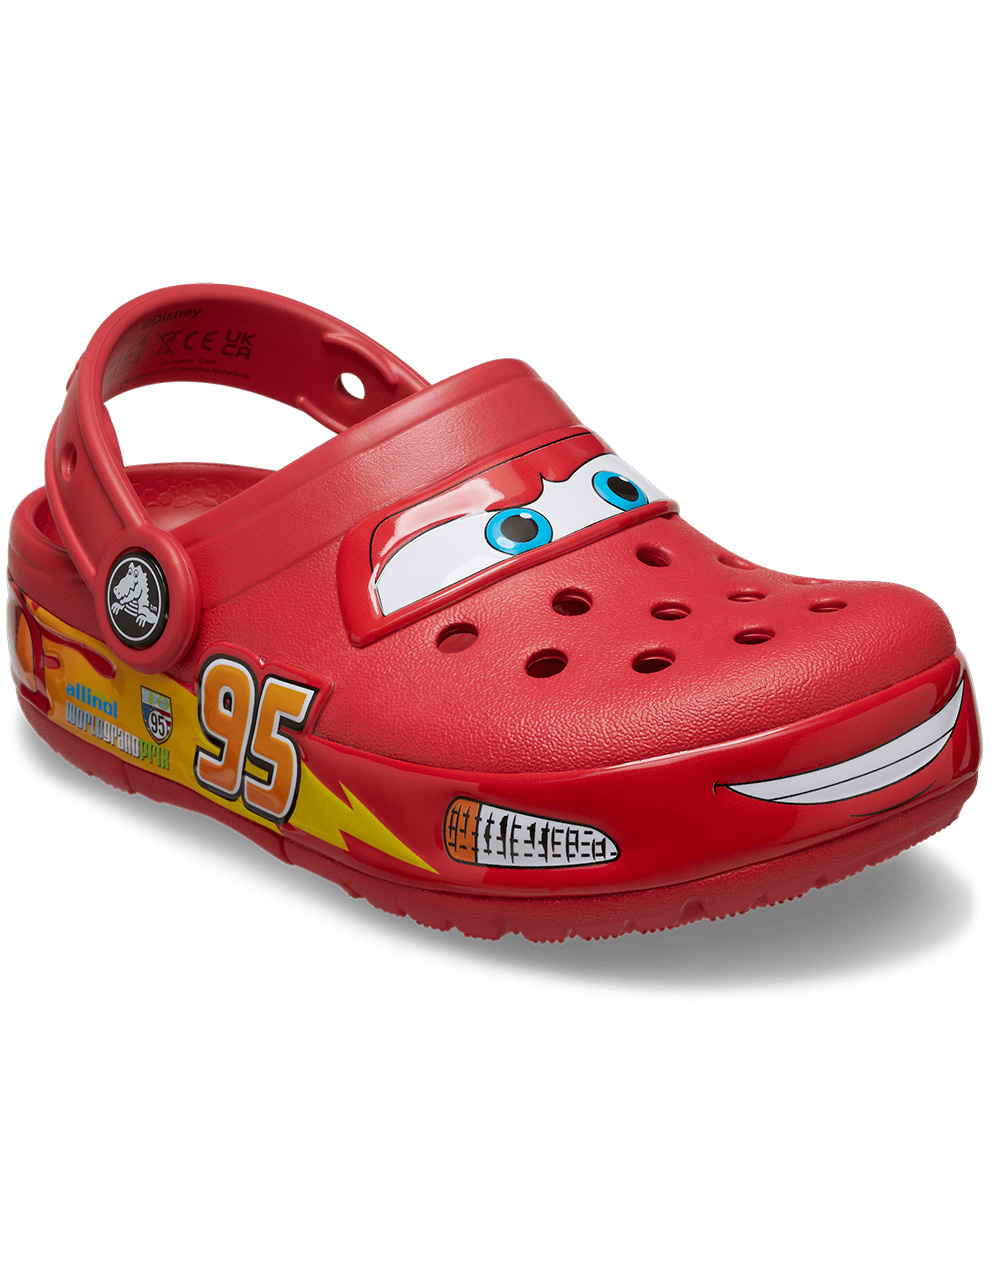 CROCS x Disney Pixar Cars Lightning McQueen Little Kids Clogs - RED ...